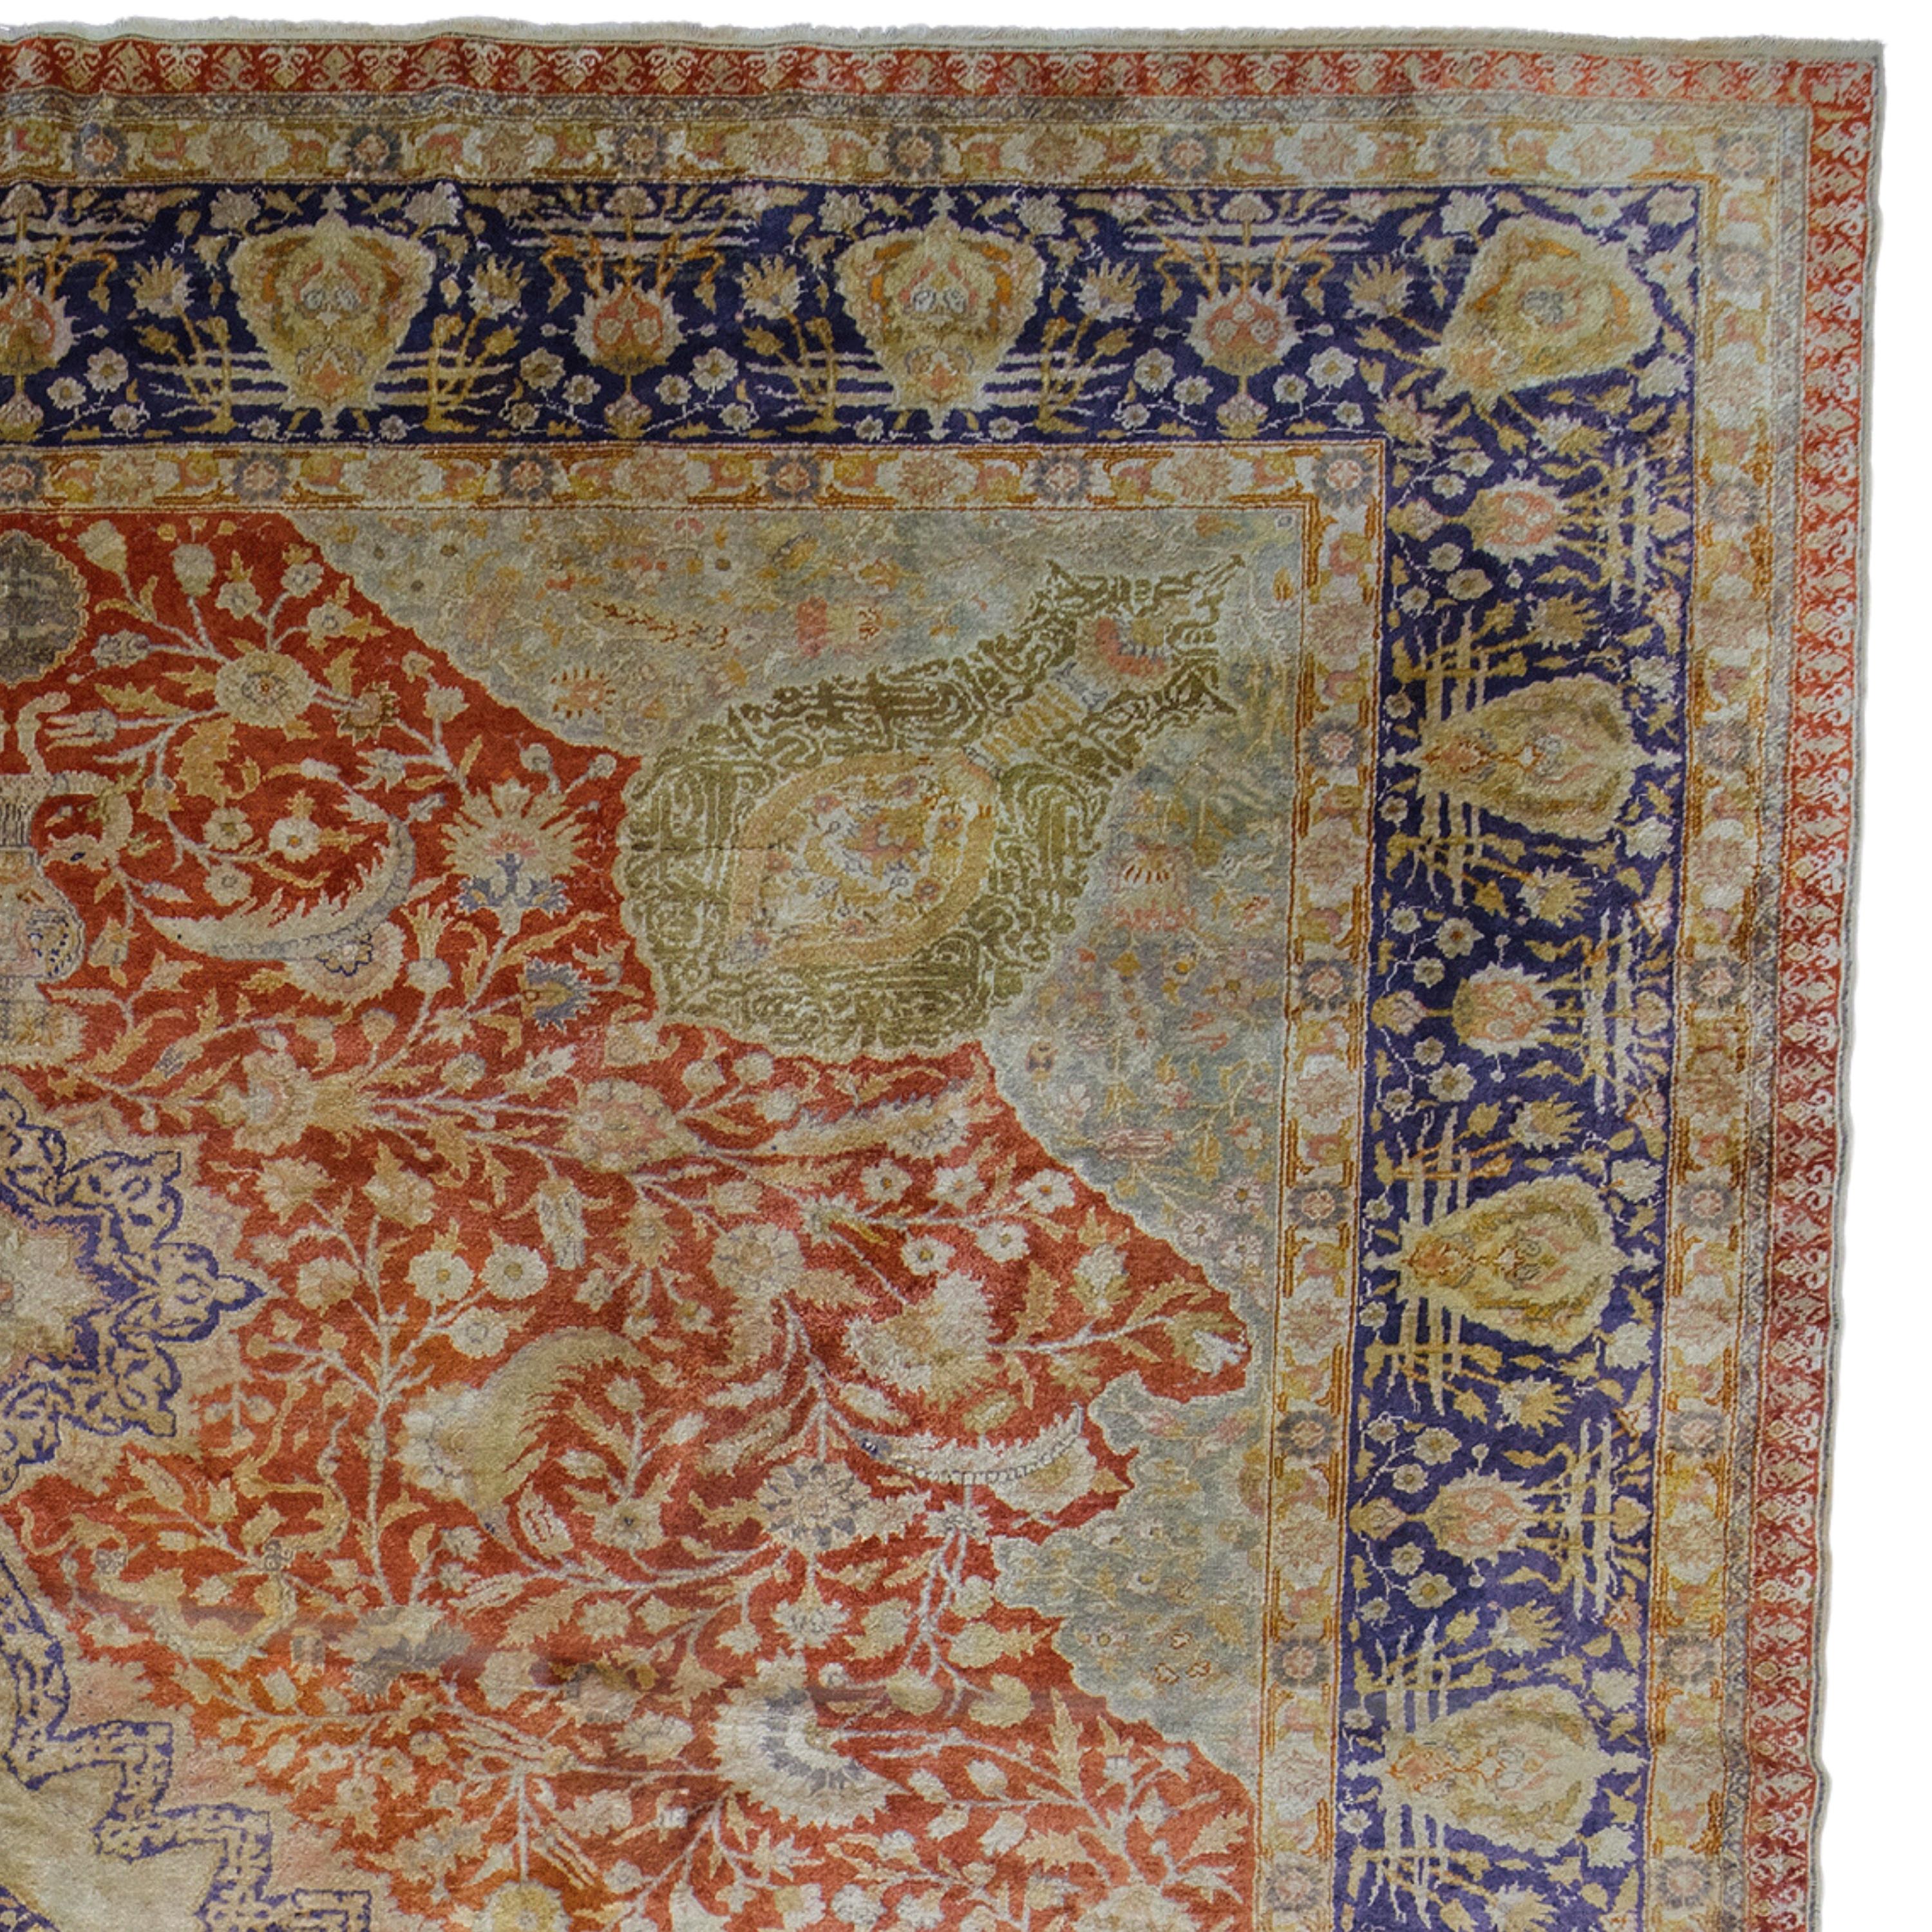 Tapis en soie de Kayseri du 20e siècle

Cet élégant tapis en soie de Kayseri du XXe siècle attire l'attention par sa richesse historique et culturelle. Avec ses détails artisanaux, sa palette de couleurs sophistiquée et ses motifs uniques, cette